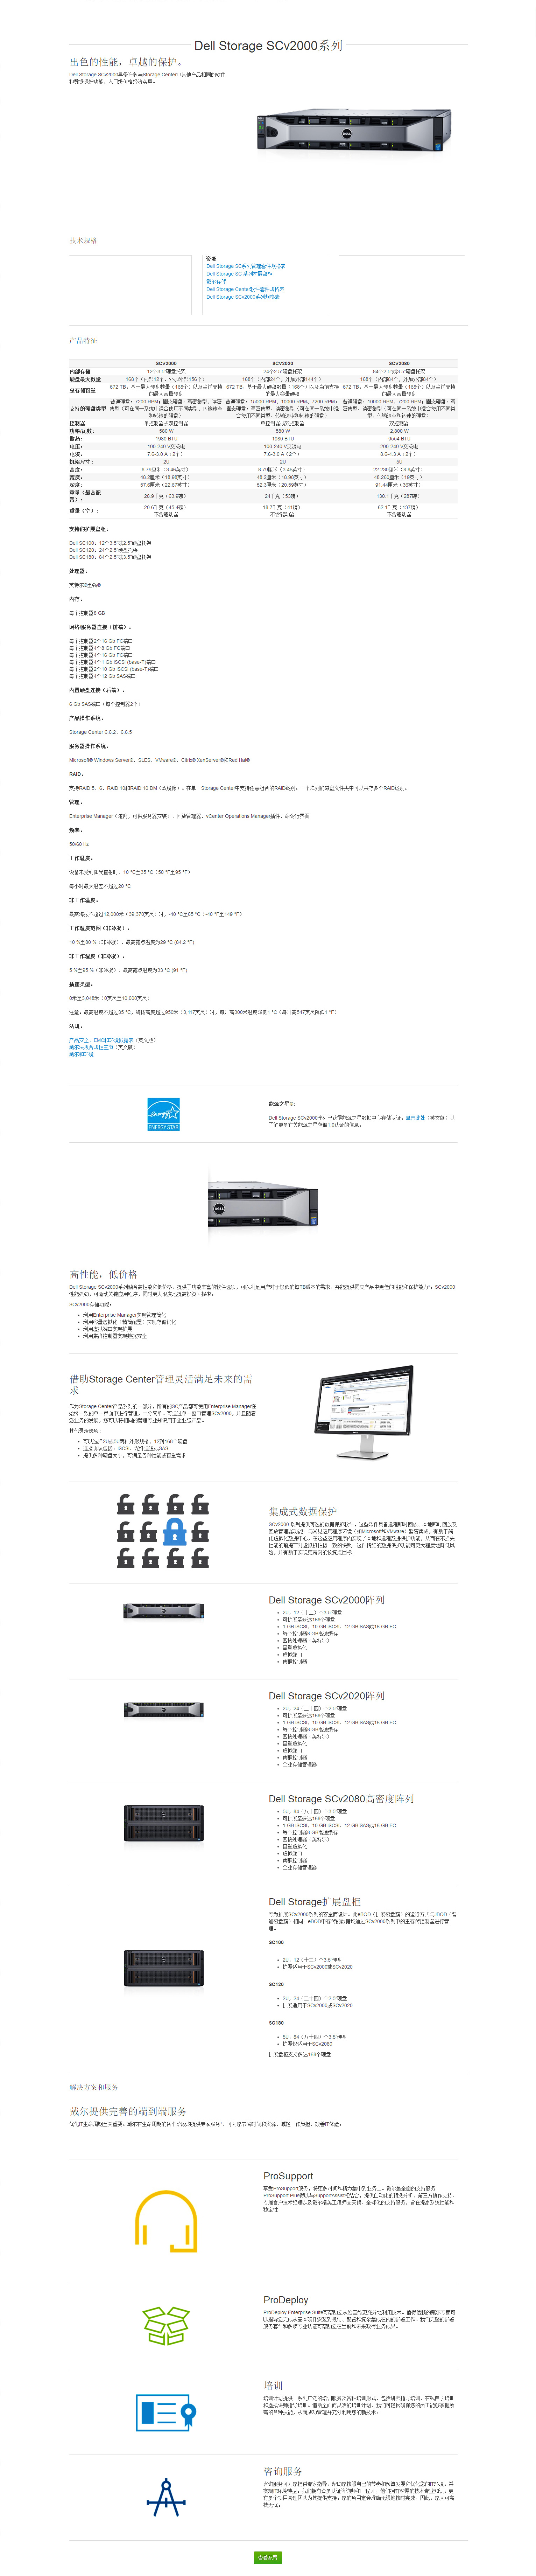 Dell-SC2000.jpg